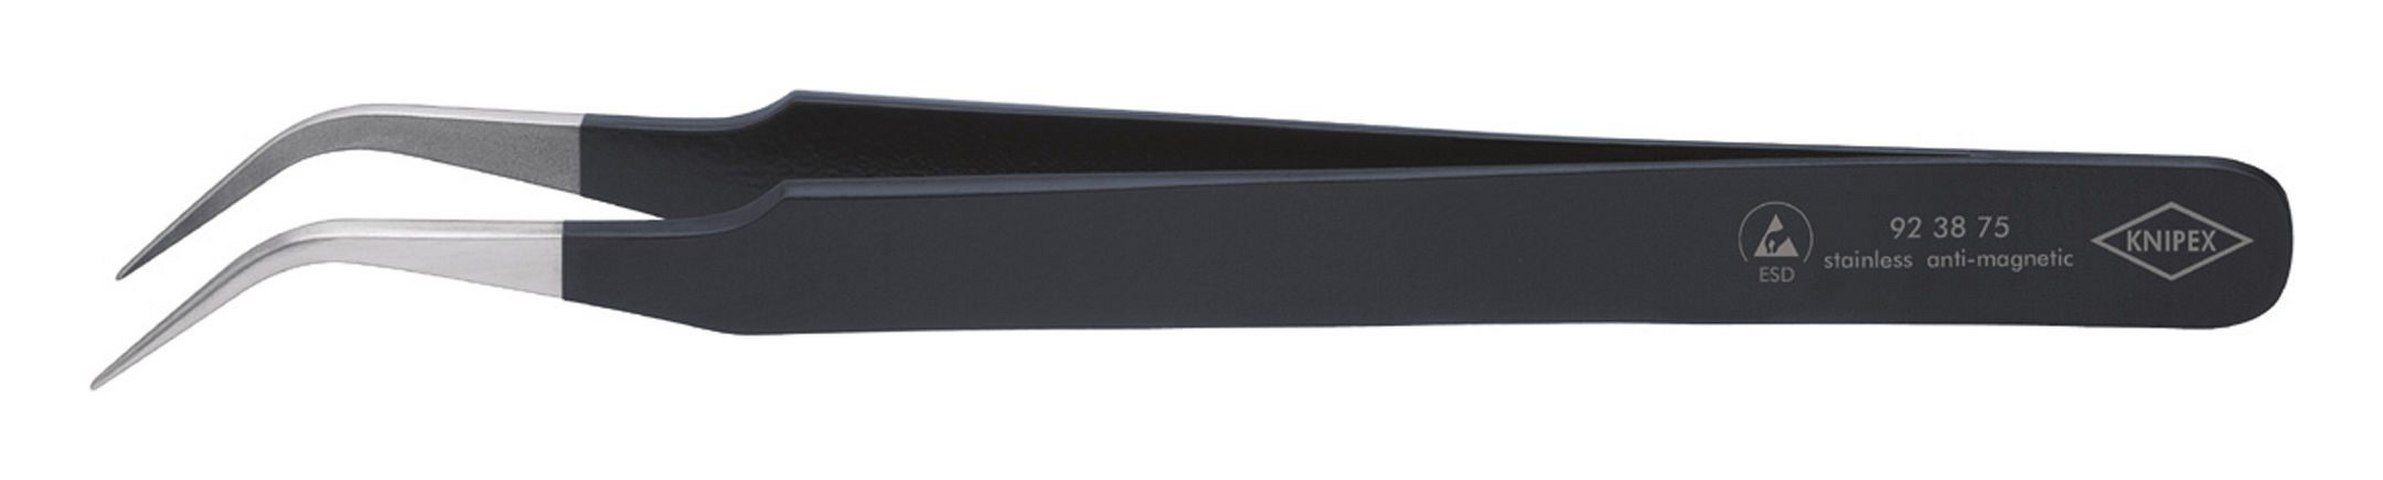 Knipex Pinzette, ESD Sichelform 120 mm schwarz